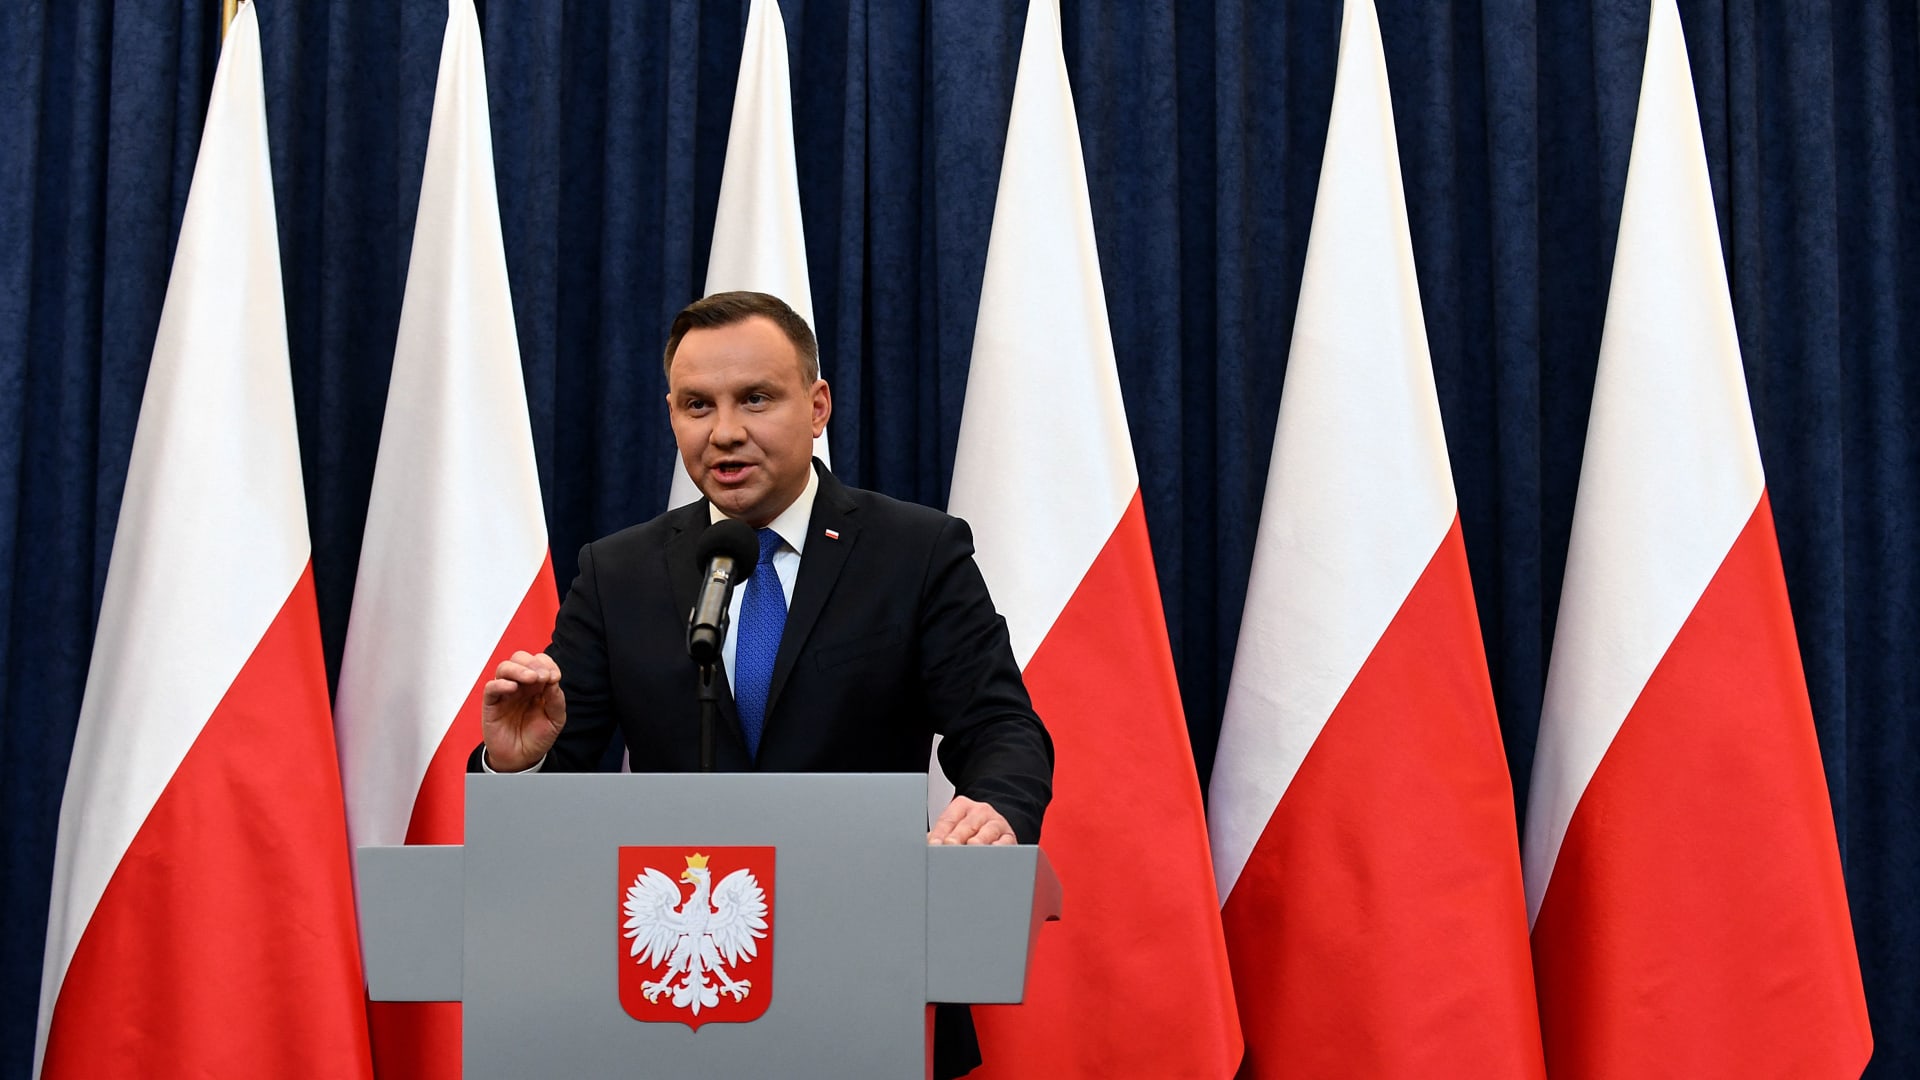 "تصعيد درامي".. تقارير عن سقوط قذائف في بولندا قرب حدود أوكرانيا ومقتل شخصين